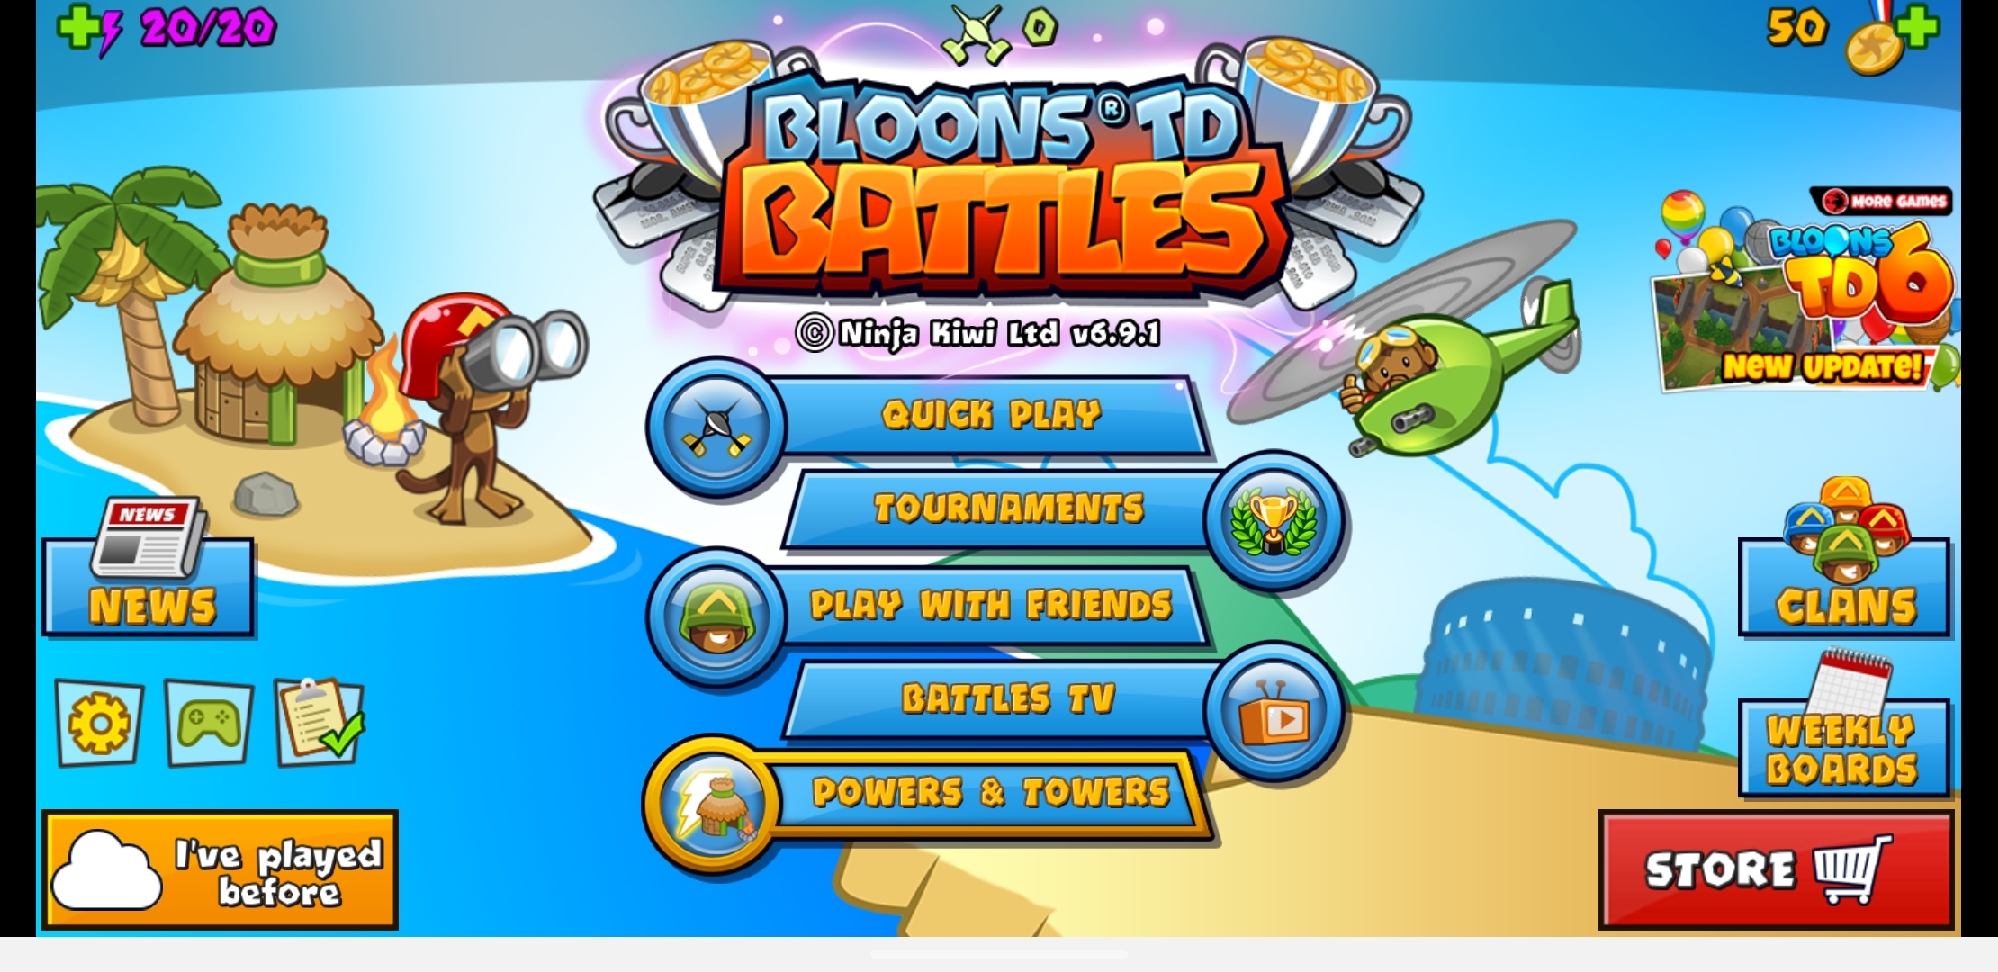 bloons td battles mod apk download